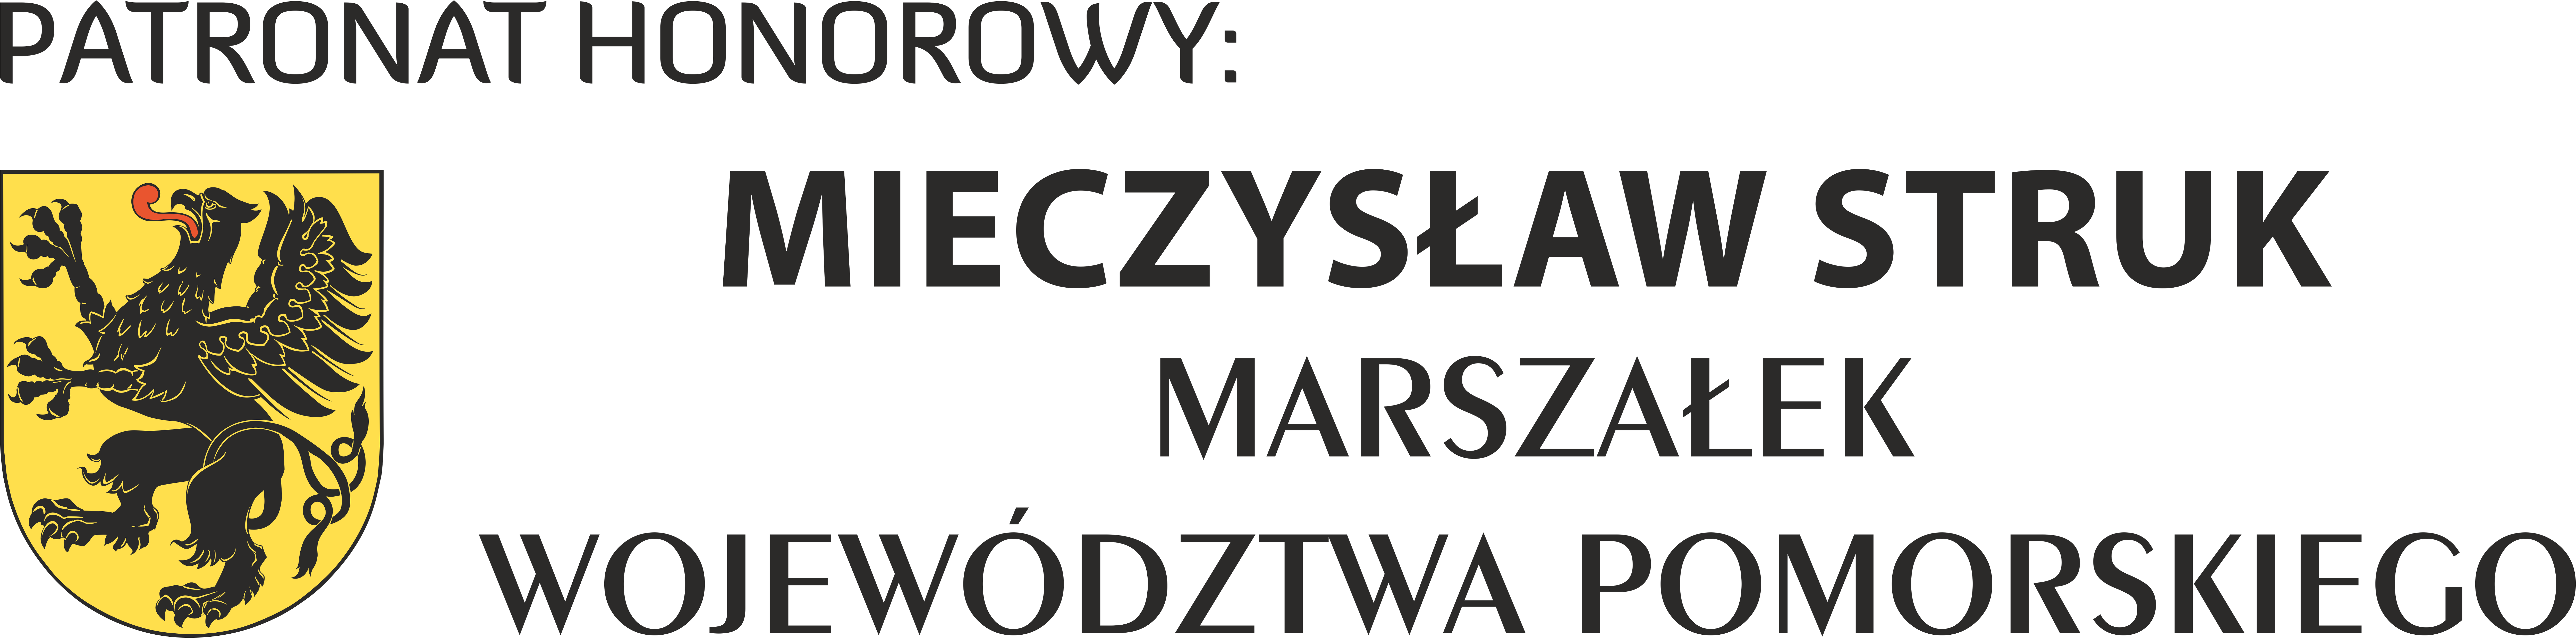 MWP-PATRONAT-Mieczysław-Struk-poziom-kolor-2021.png